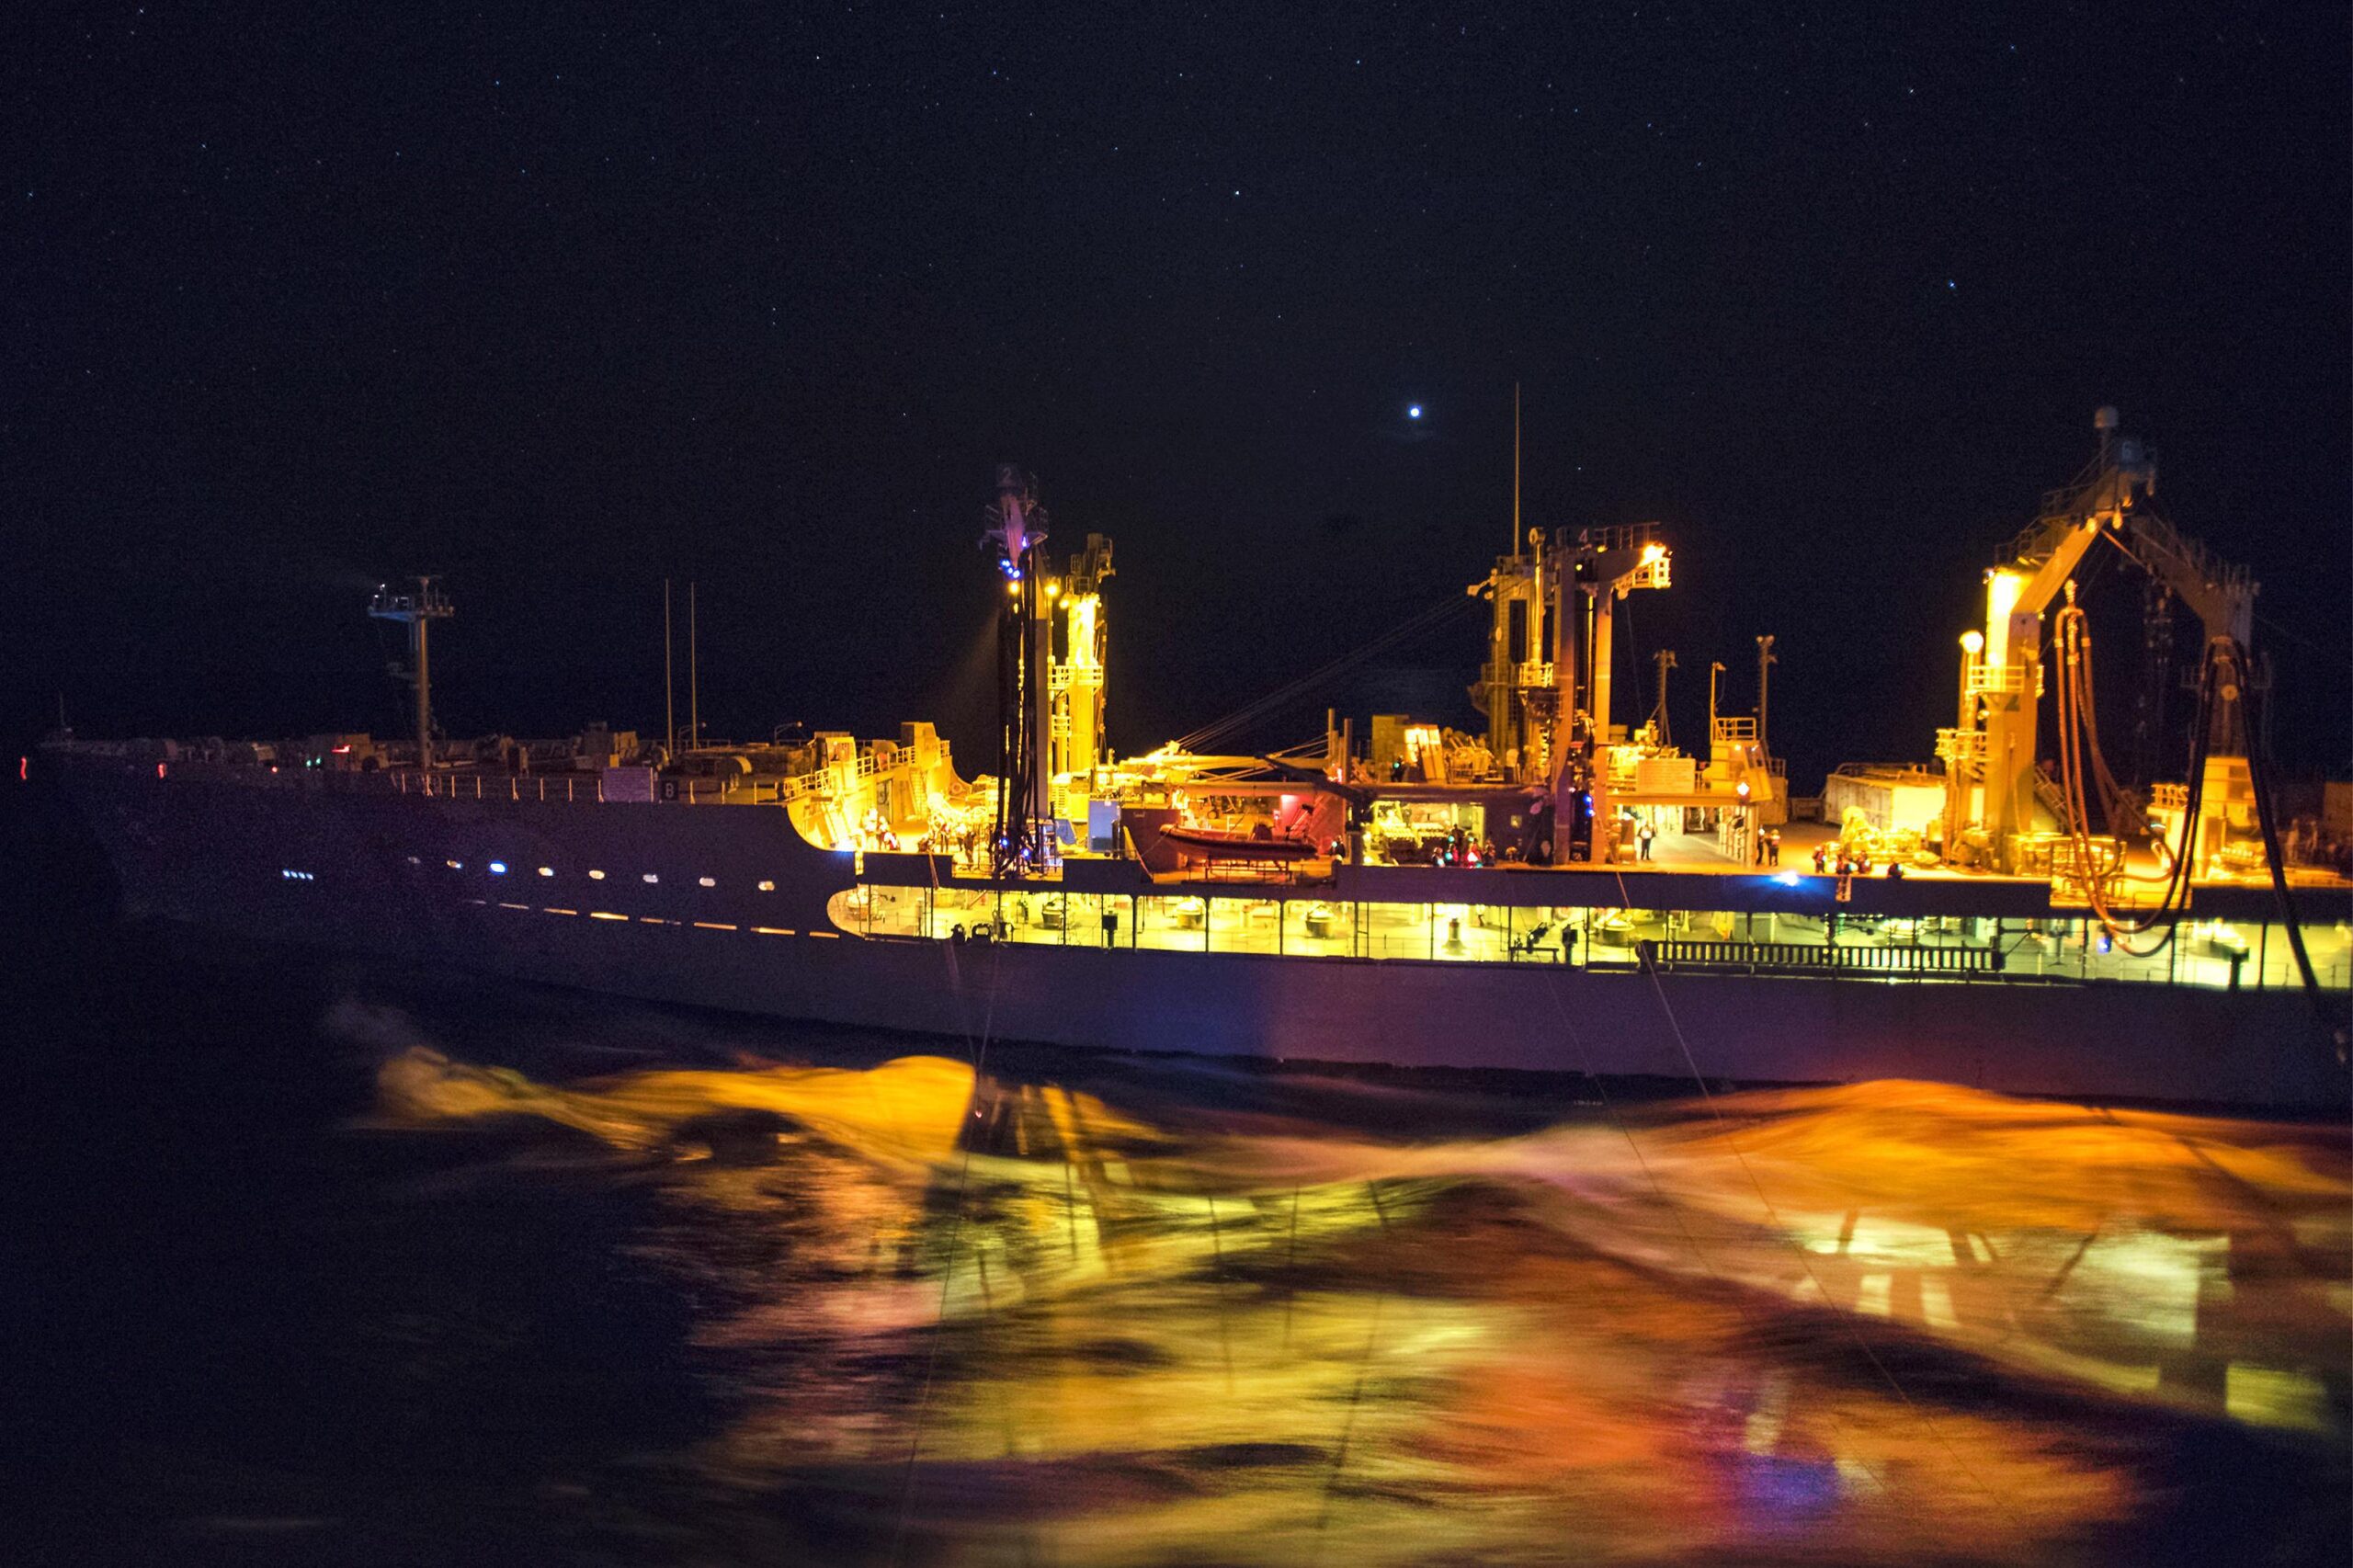 Navy oiler tanker at night